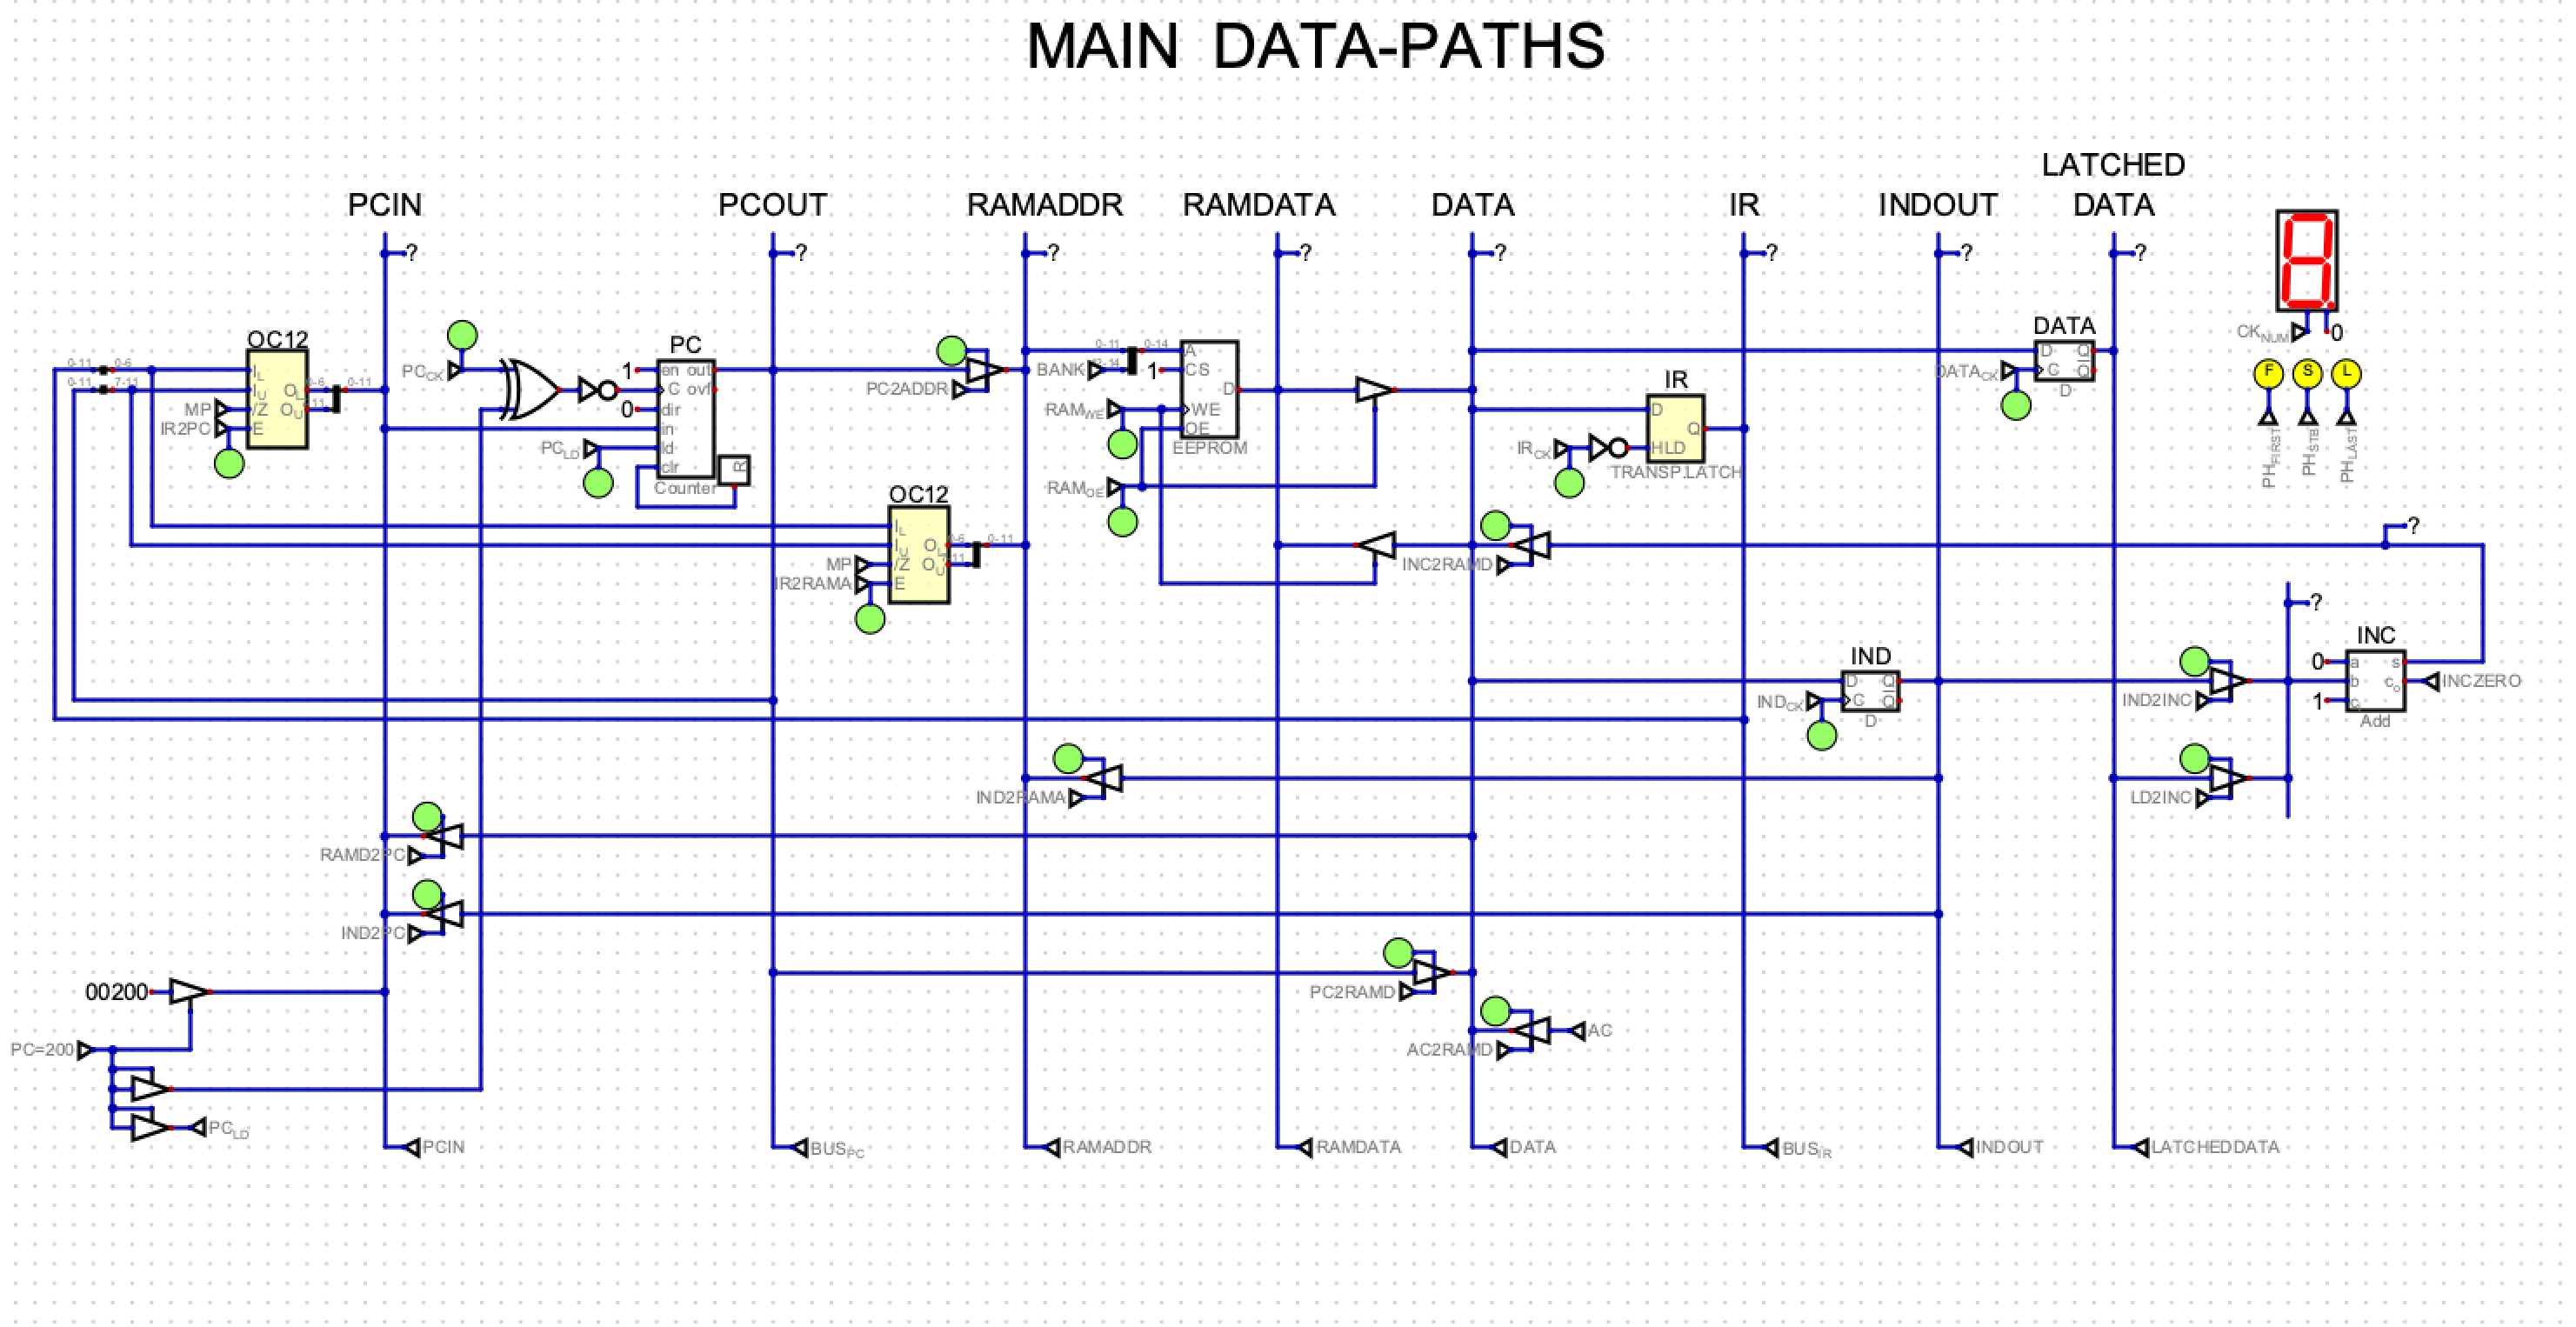 Data paths